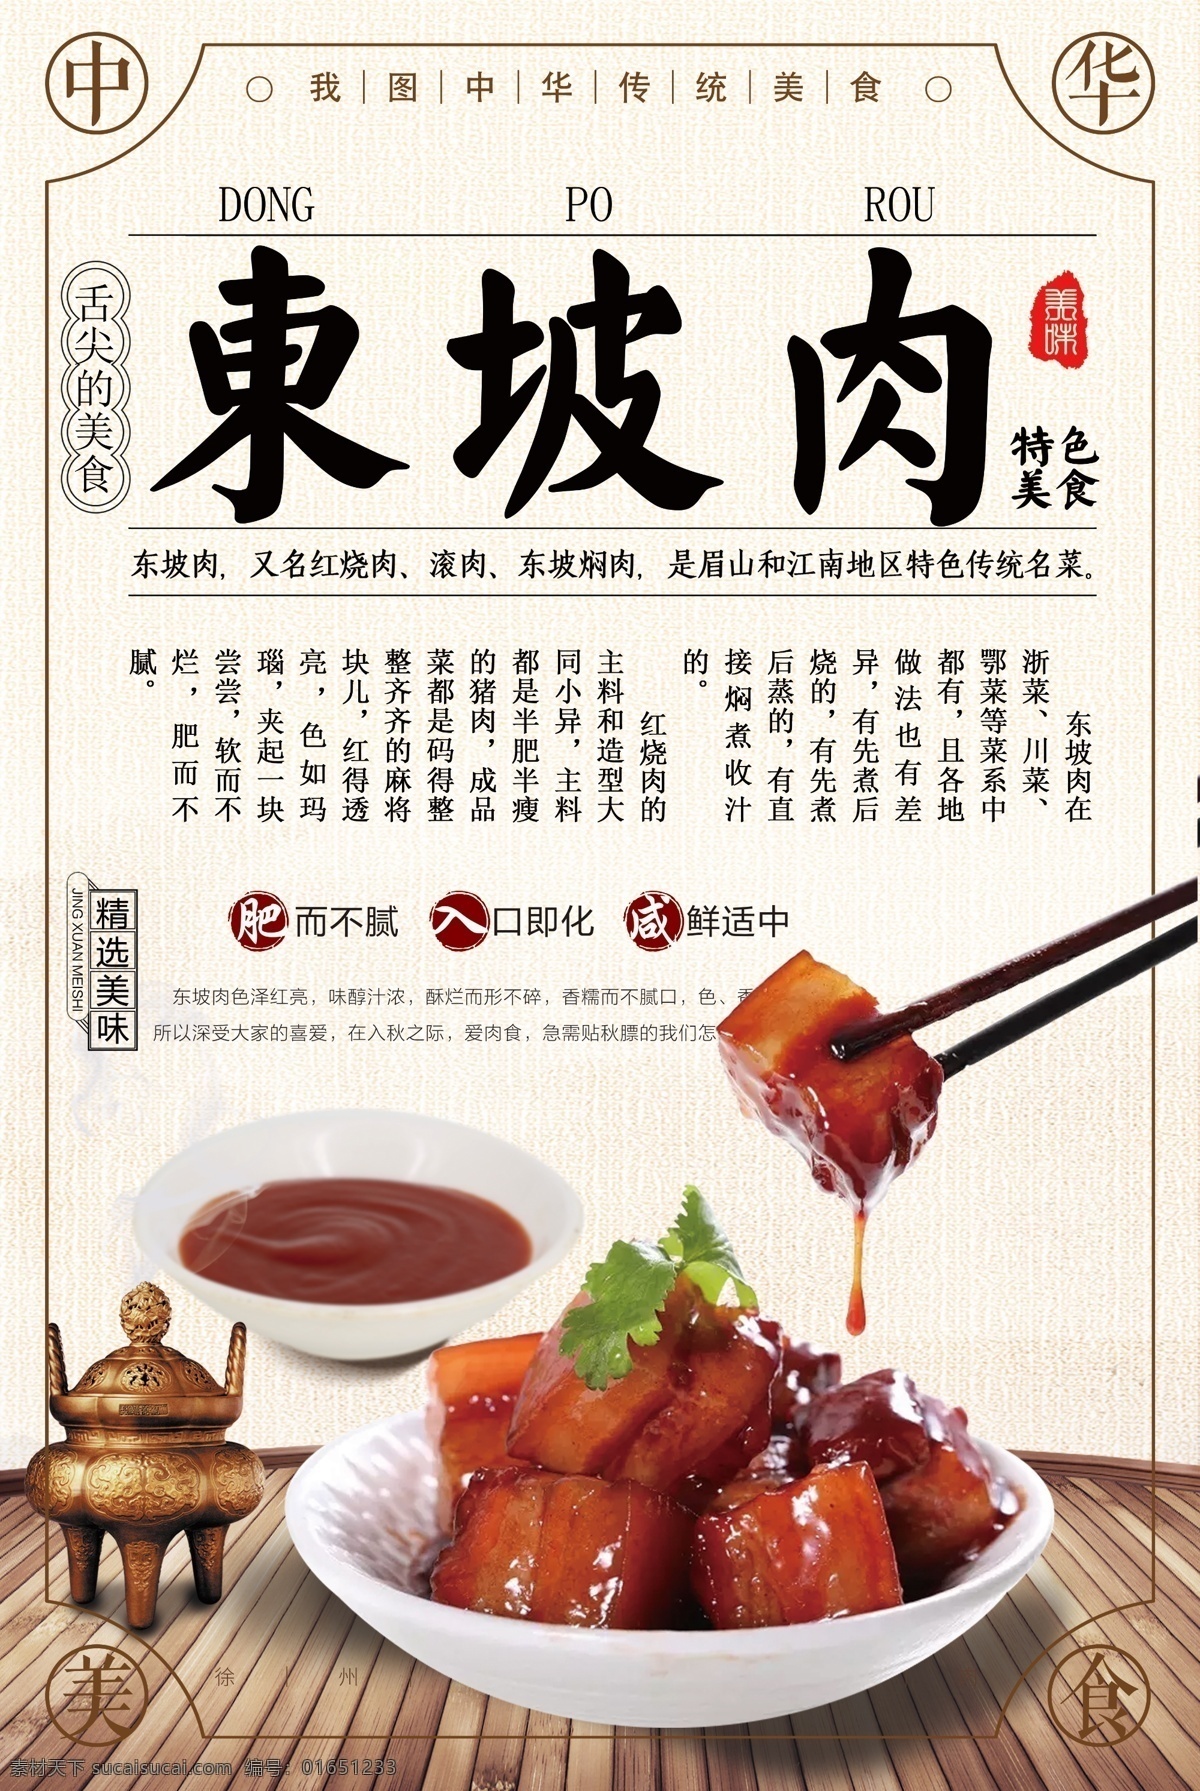 中国 传统 风格 东坡肉 美食 海报 中国风 美食海报 传统美食海报 红烧肉 苏东坡 中国传统 美食中国 美食风格